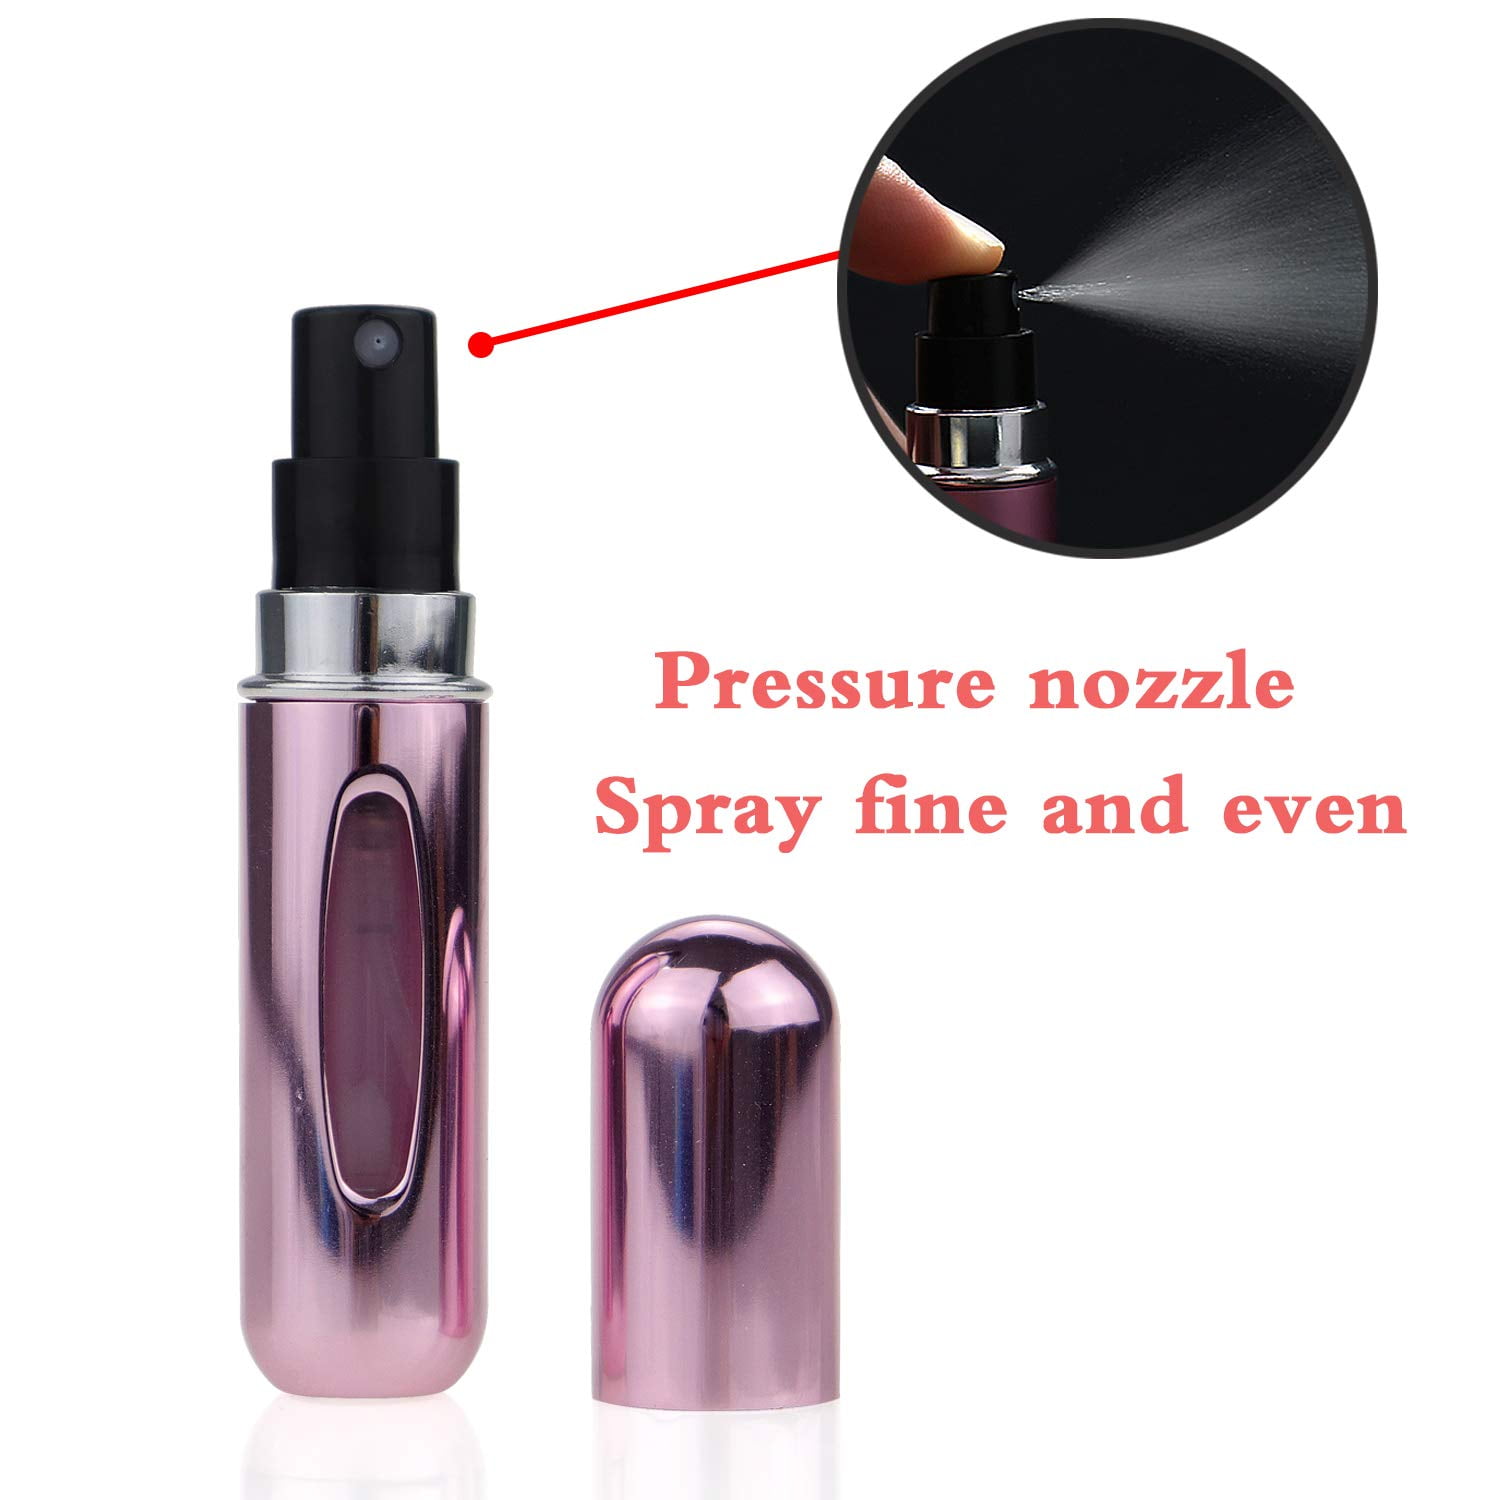  Yamadura Mini Refillable Perfume Portable Atomizer